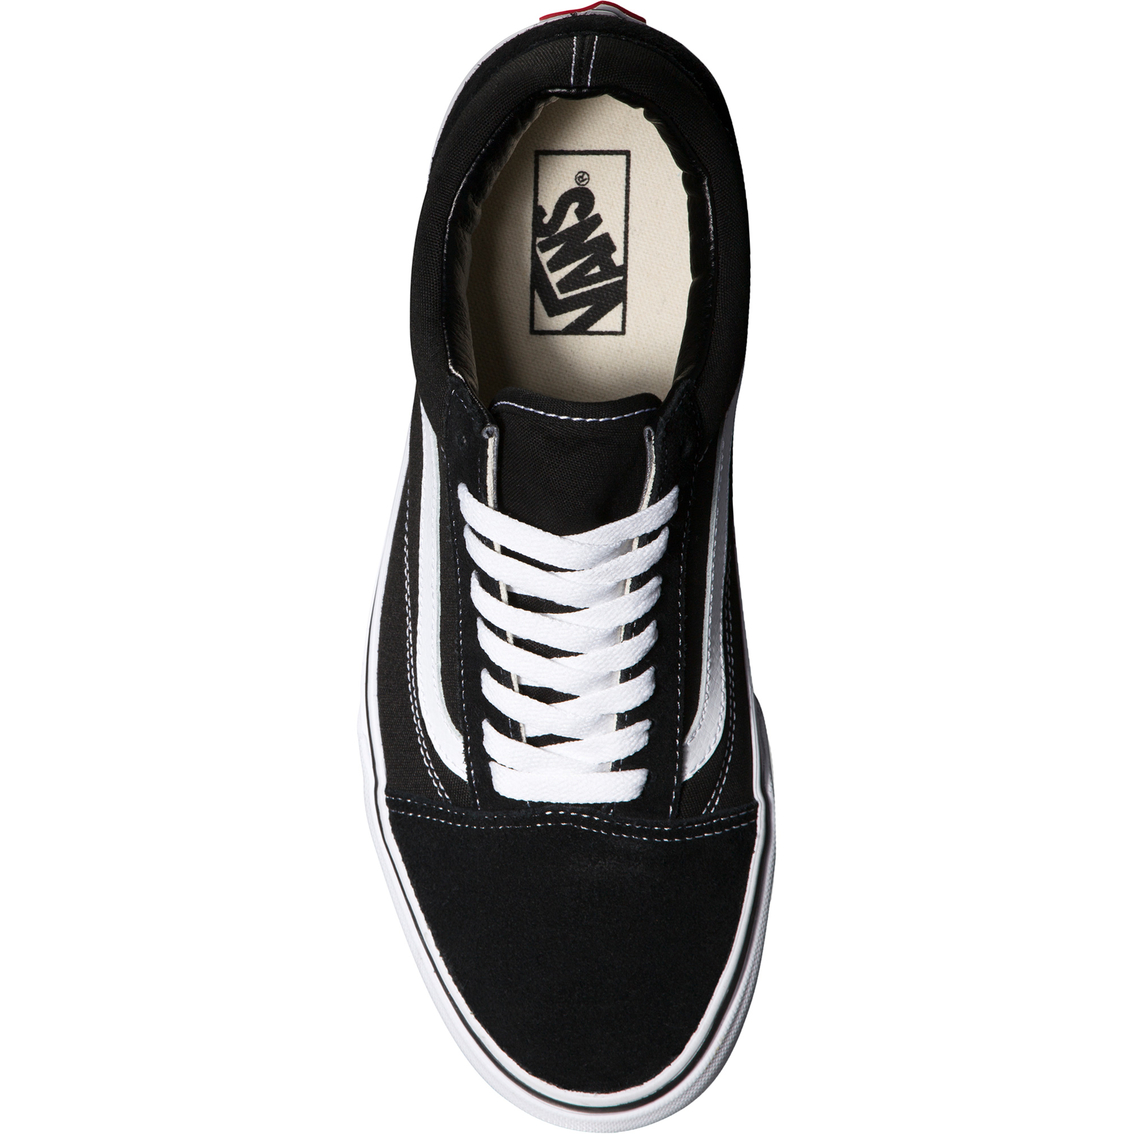 Vans Men's Old Skool Sneakers - Image 3 of 6